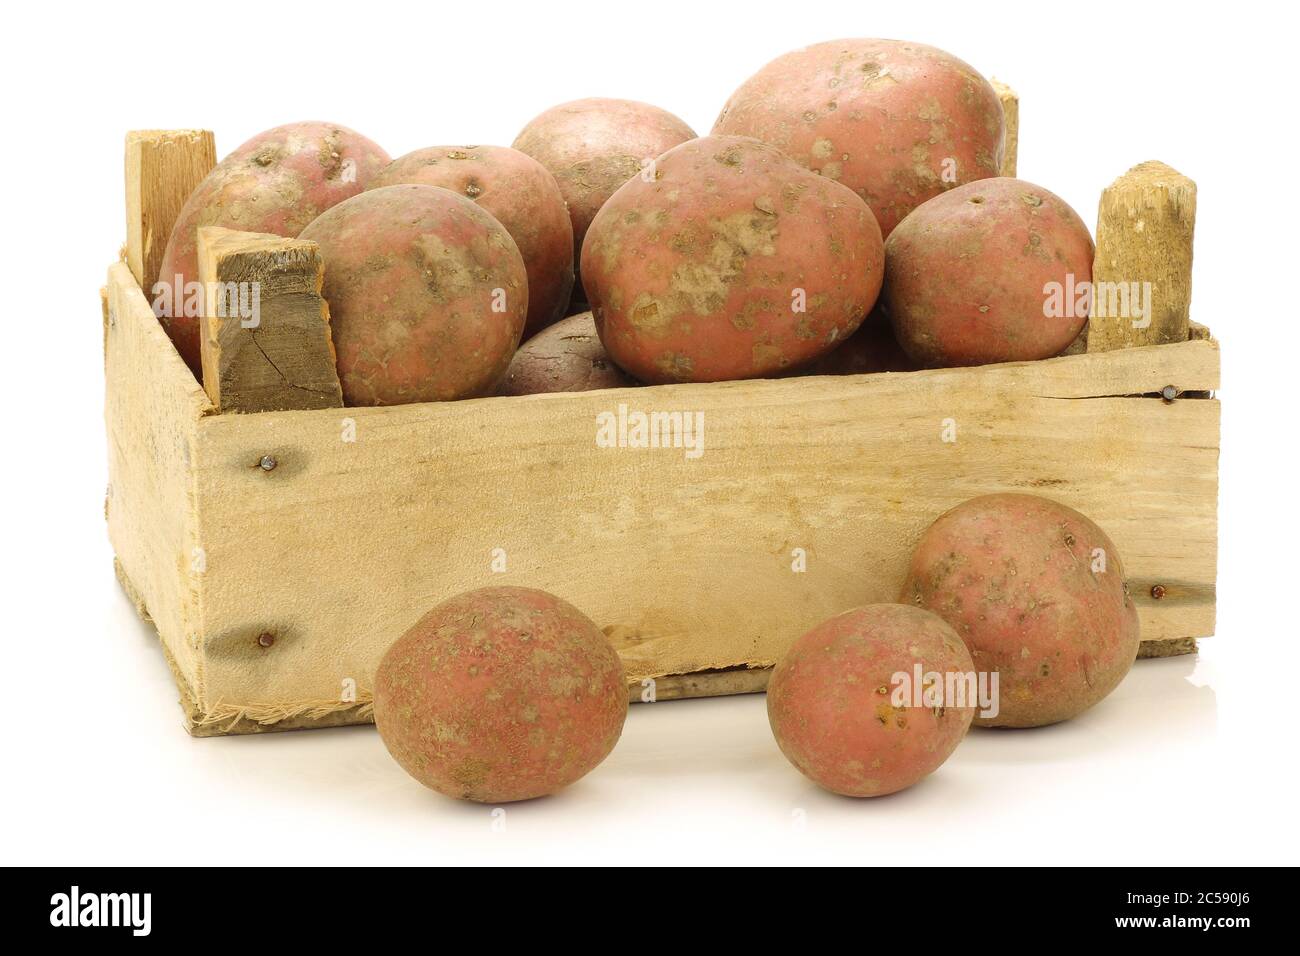 Pommes de terre hollandaises fraîchement récoltées appelées 'Bildtstar' dans une caisse en bois sur fond blanc Banque D'Images